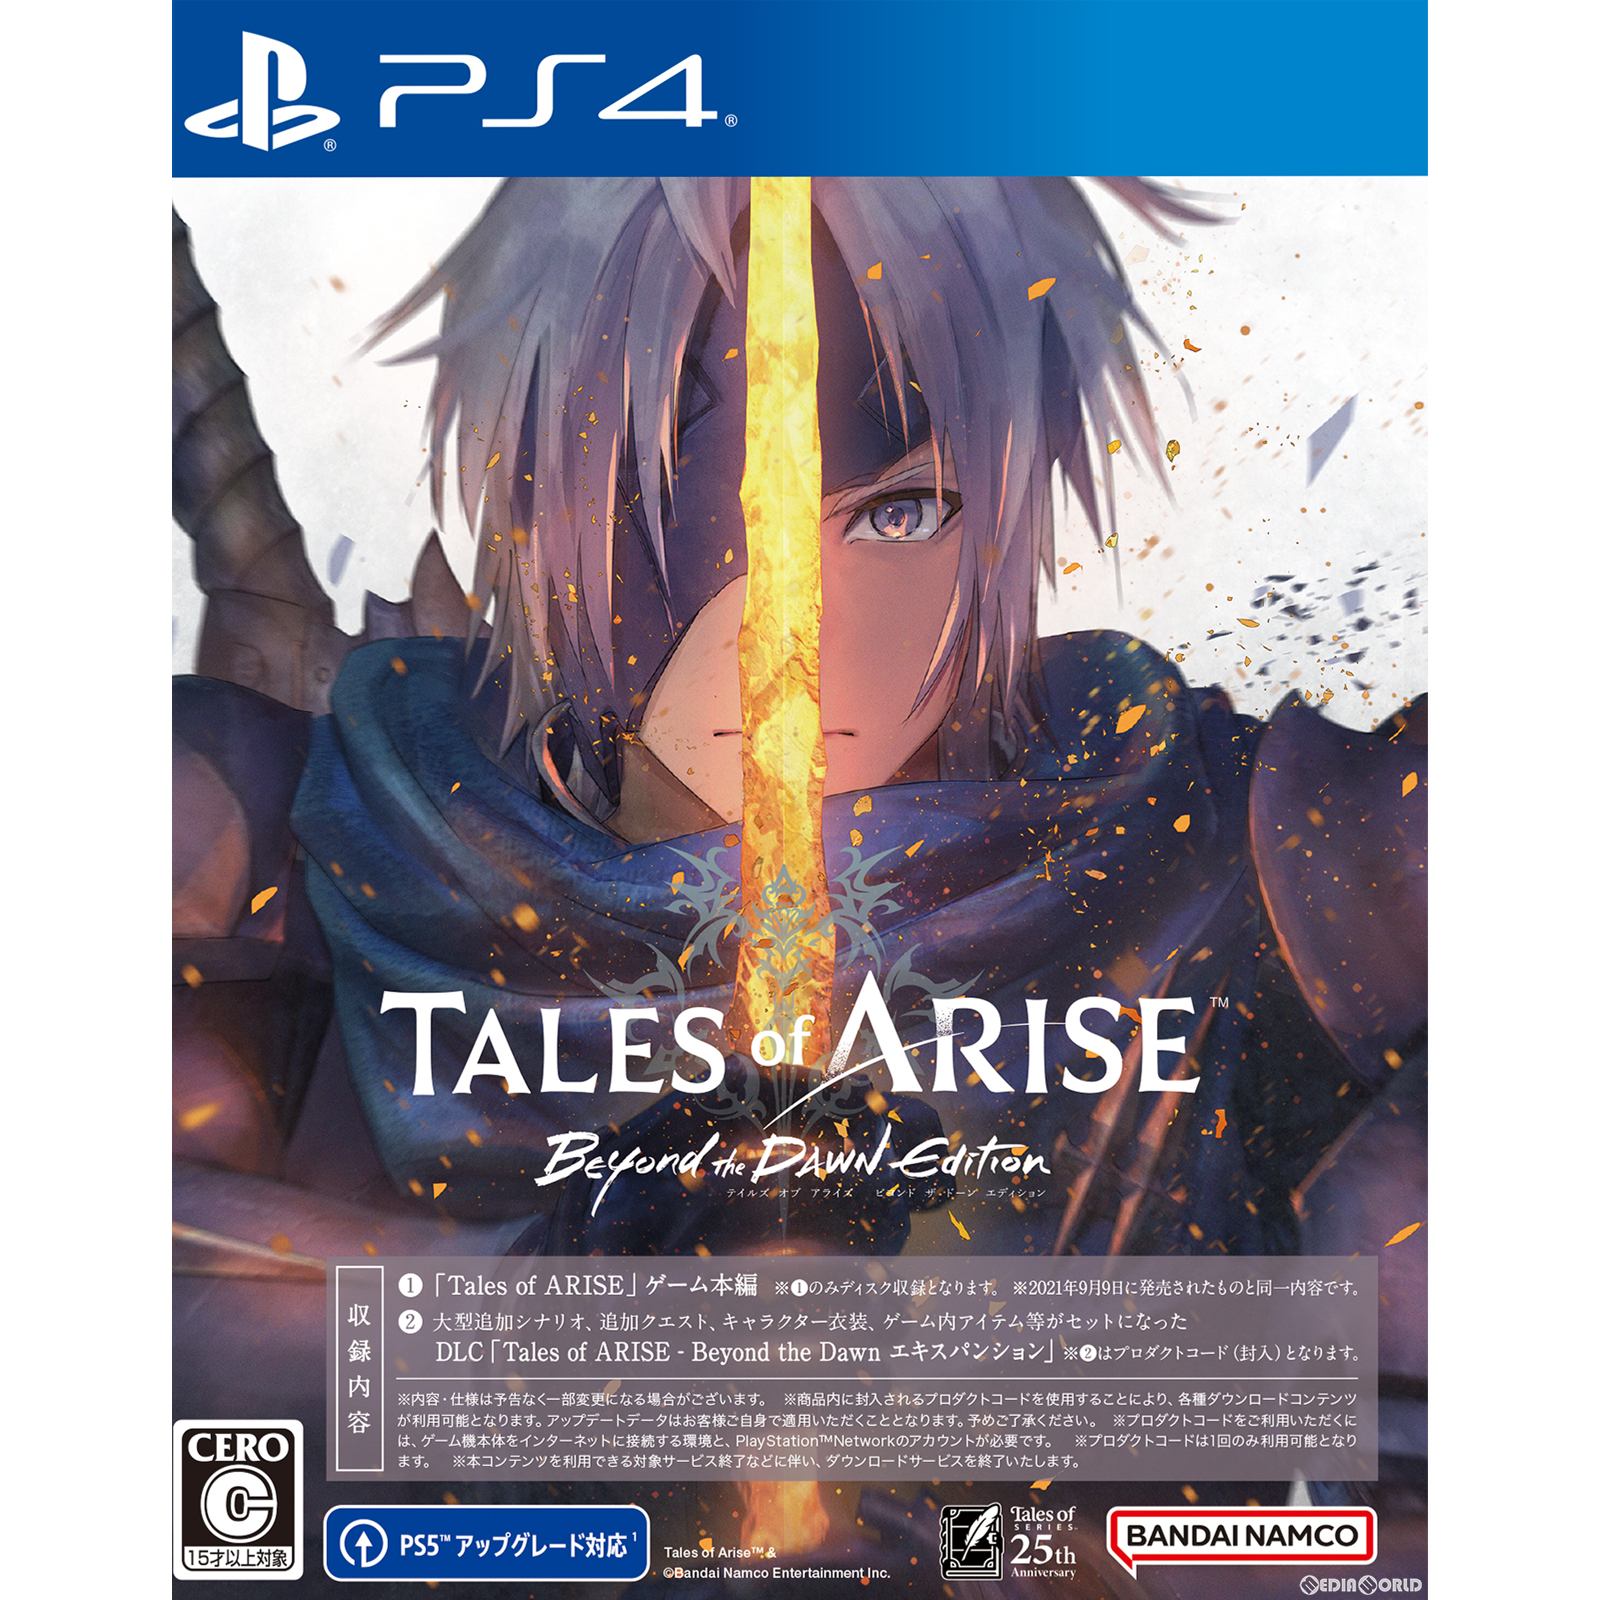 【新品即納】[PS4]早期購入特典付 Tales of ARISE - Beyond the Dawn Edition(テイルズ オブ アライズ  ビヨンド ザ ドーン エディション)(20231109)